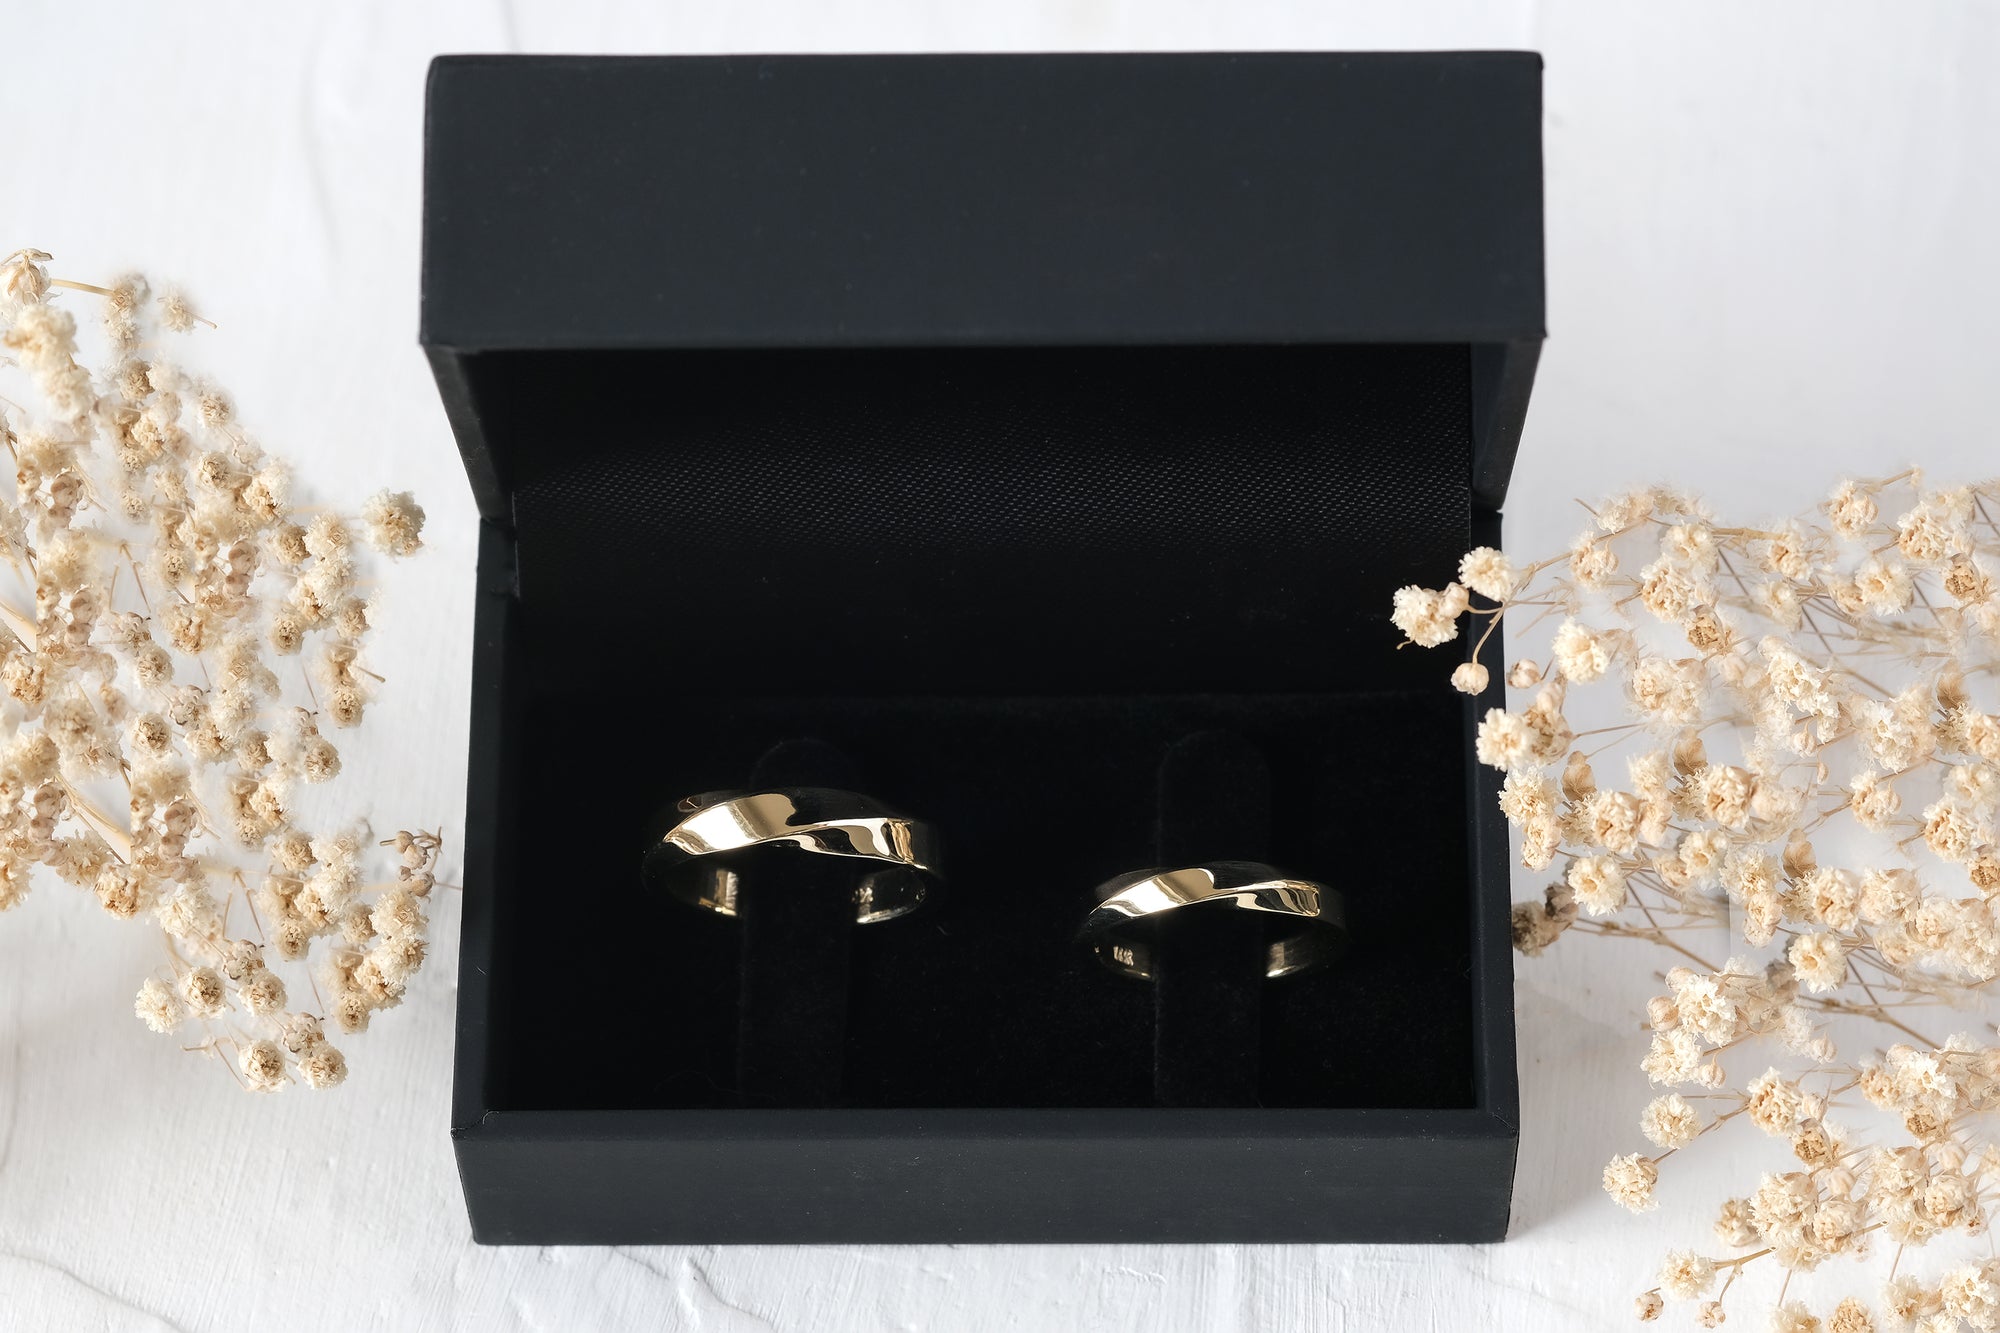 טבעת נישואין זהב עיצוב מוביוס 3 מ"מ בגימור מבריק